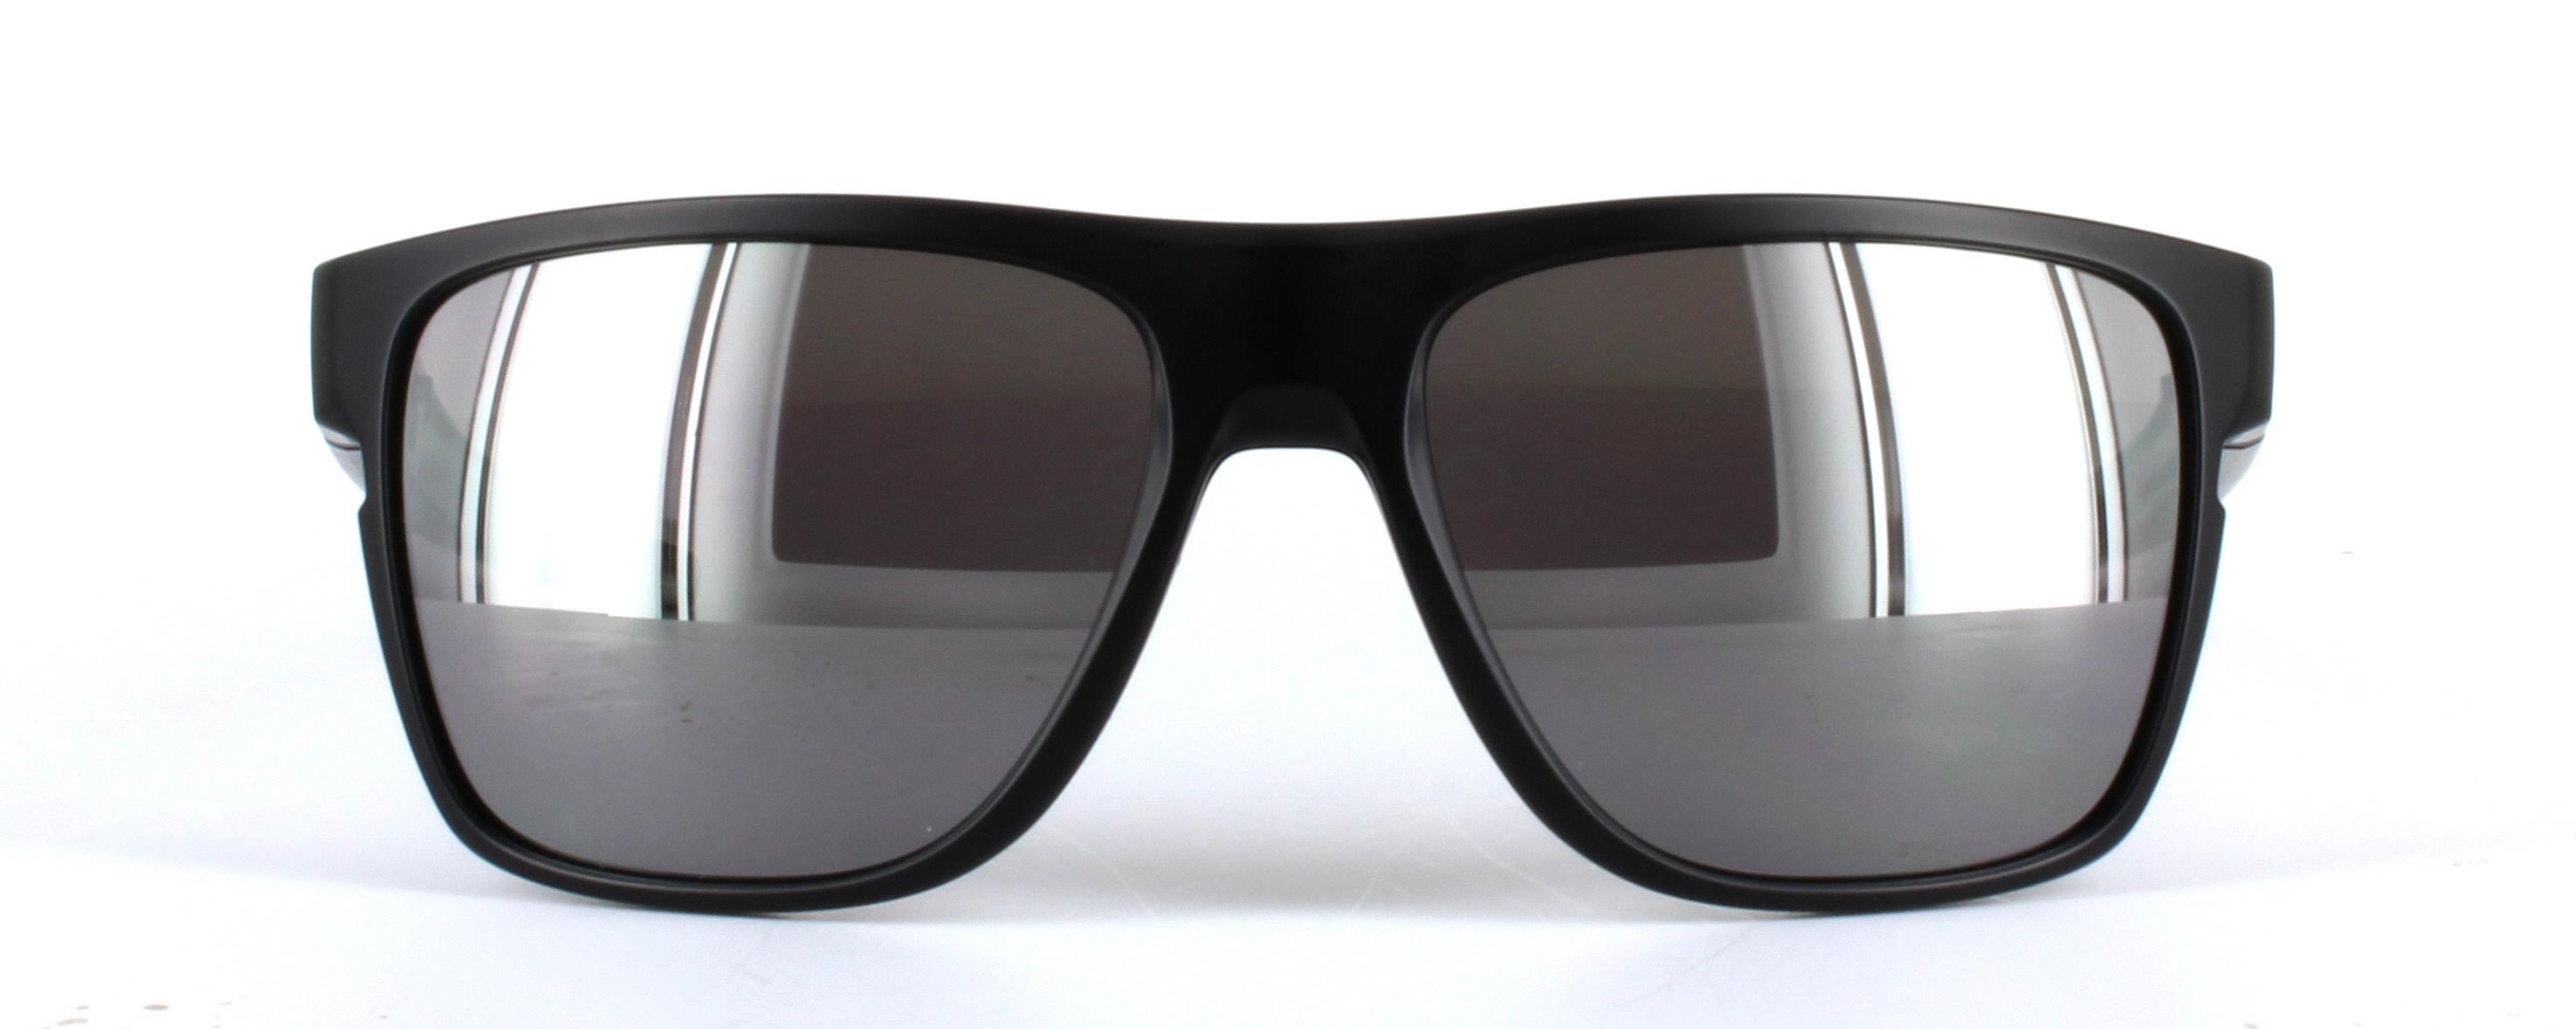 Oakley (O9360) Black Full Rim Plastic Prescription Sunglasses - Image View 5